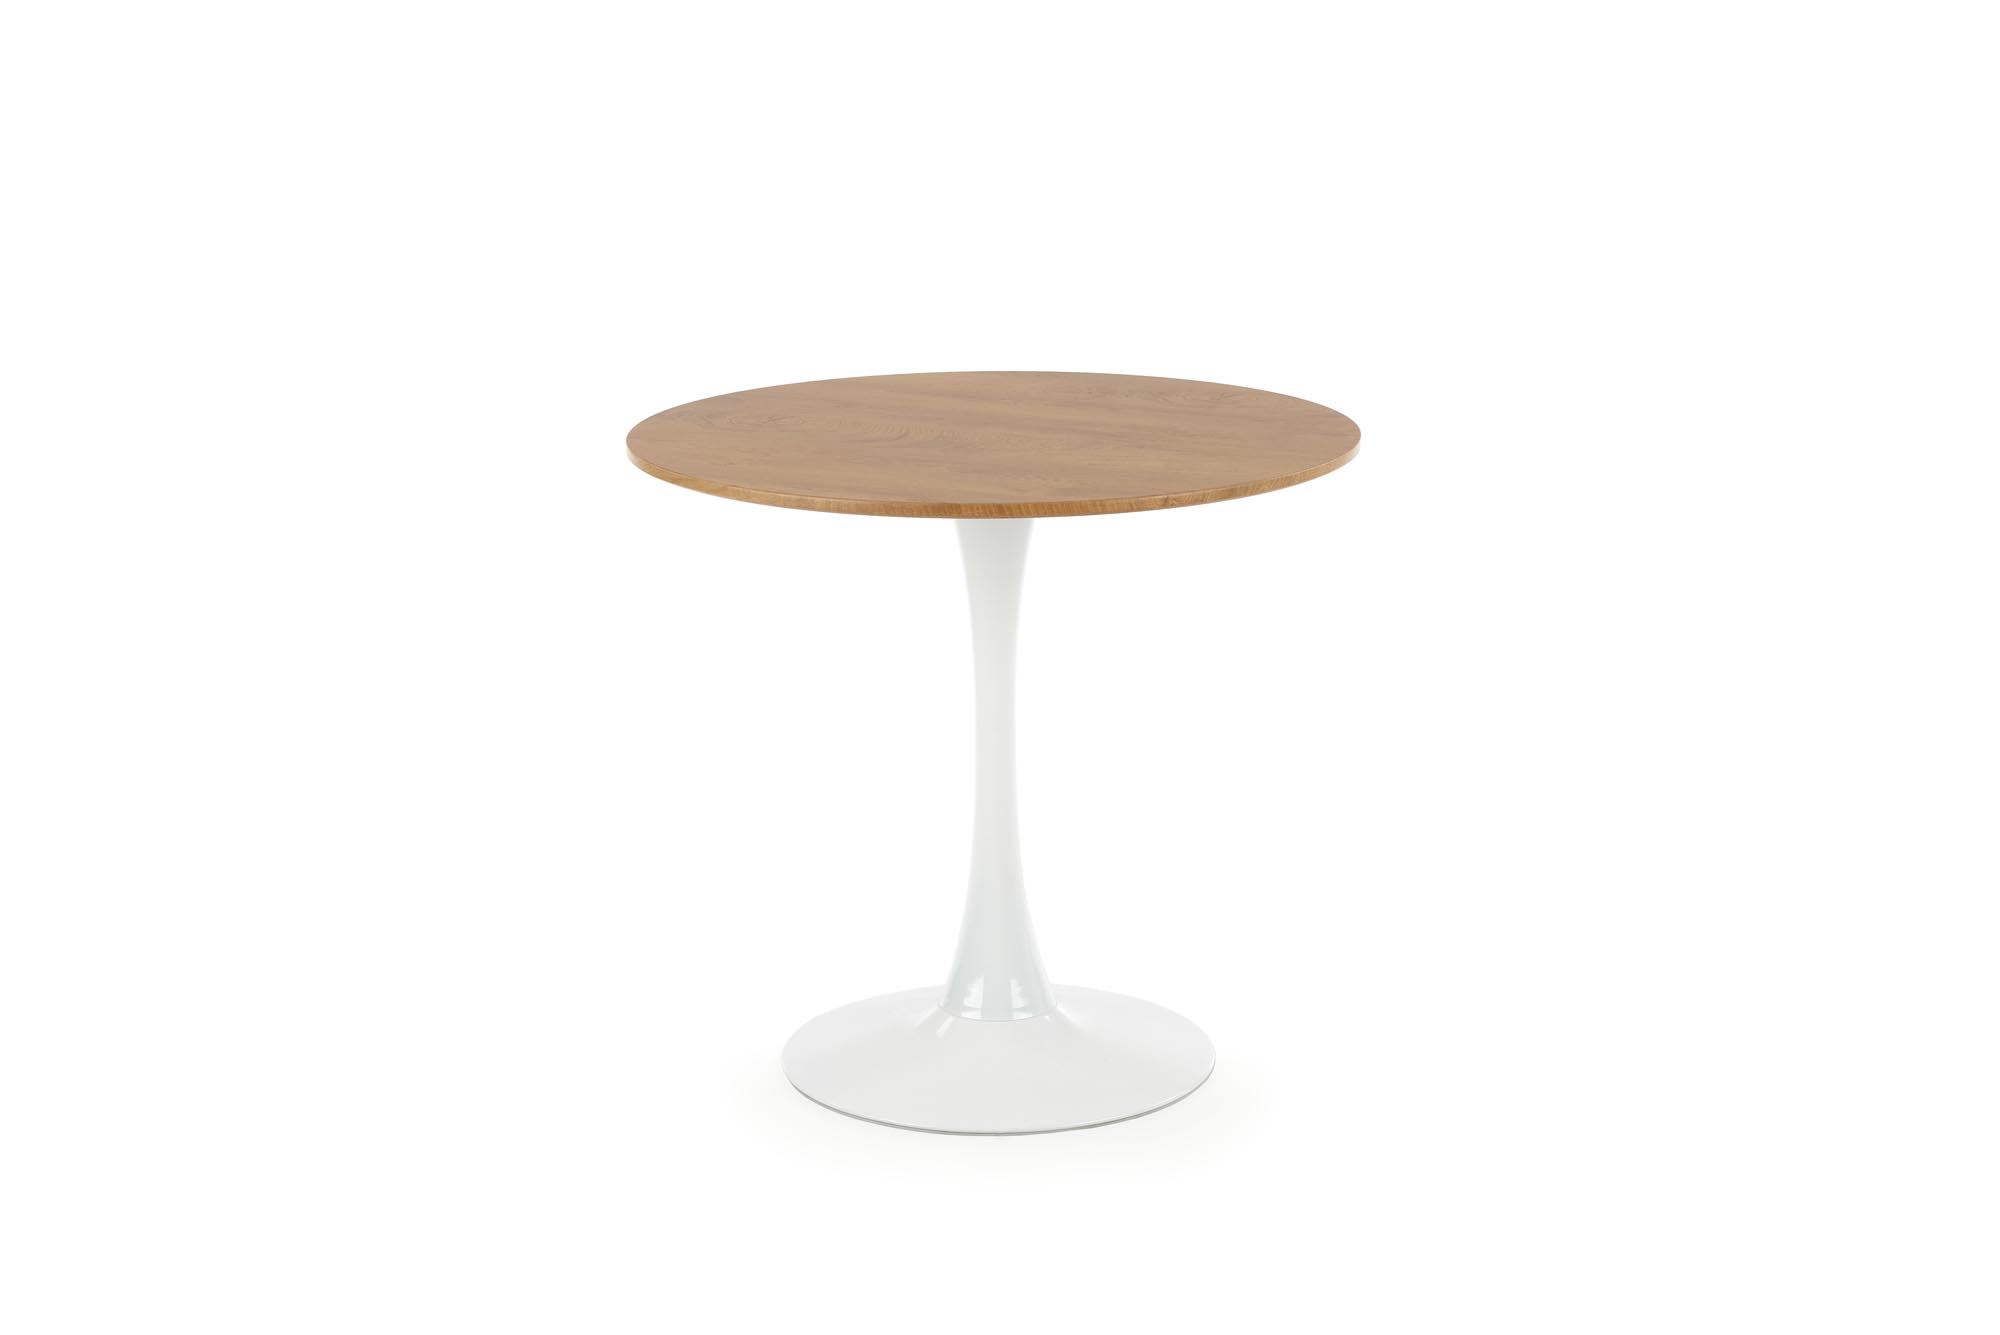 STING asztal - asztallap - natúr, láb - fehér sting stůl Deska - přírodní, noha - Bílý